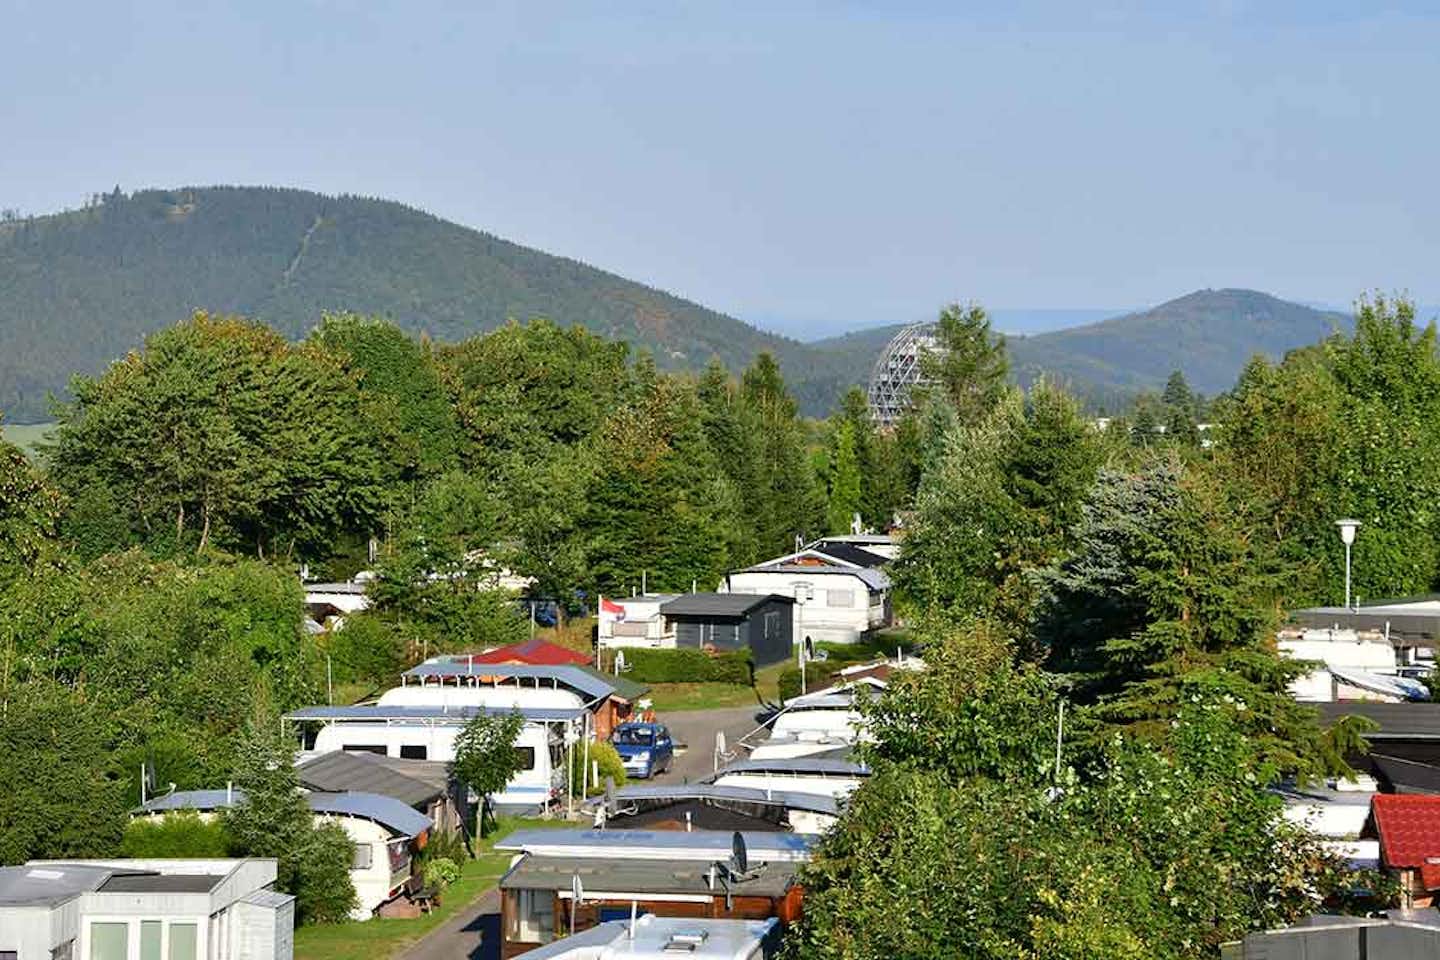 Campingpark Hochsauerland  - Blick auf den Stellplatz vom Campingplatz zwischen Bäumen